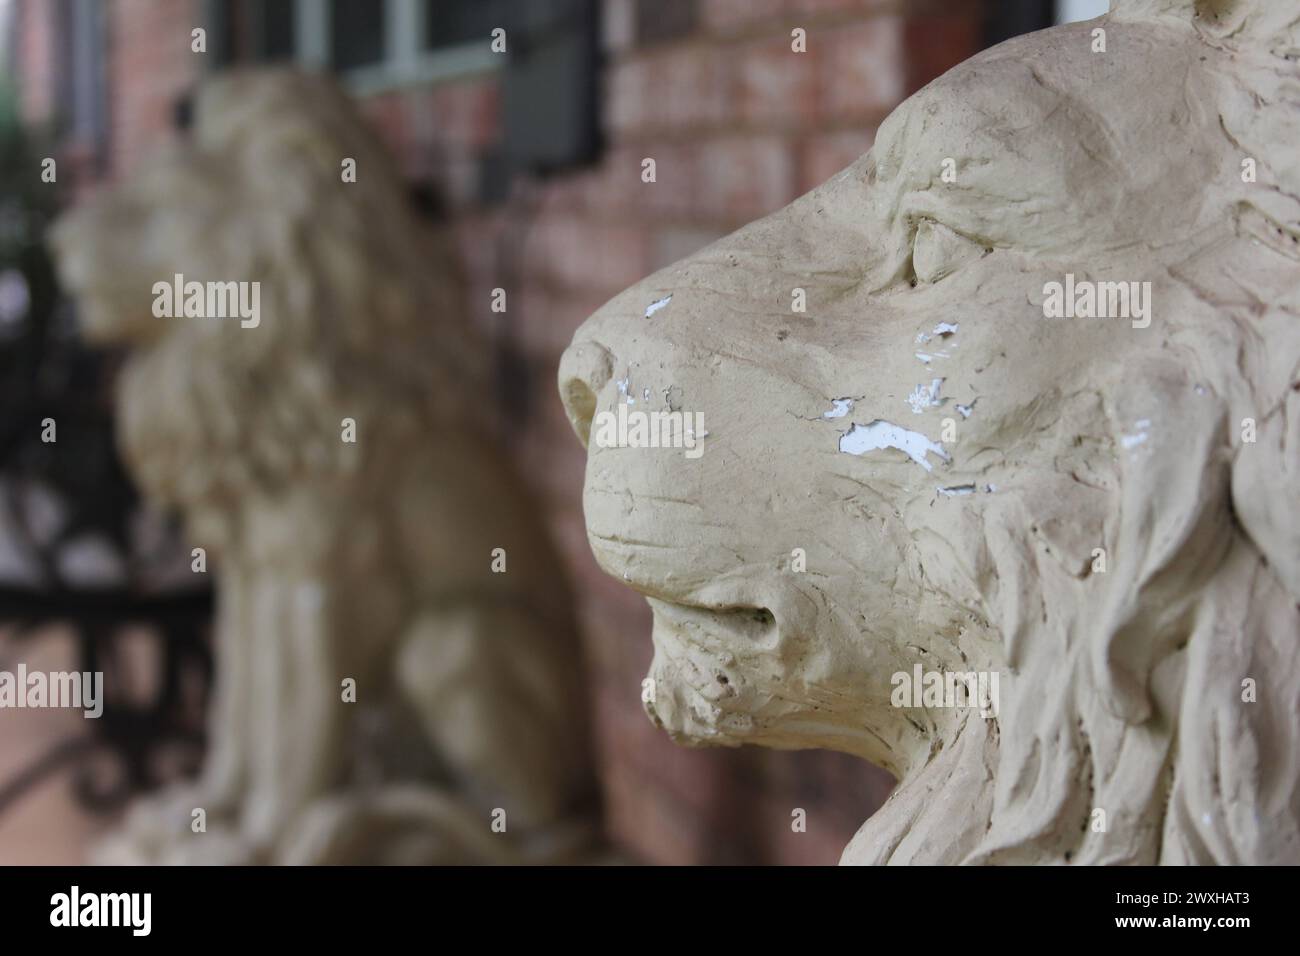 Deux statues de lion montent la garde à l'extérieur d'un ancien bâtiment en briques avec des fenêtres Banque D'Images